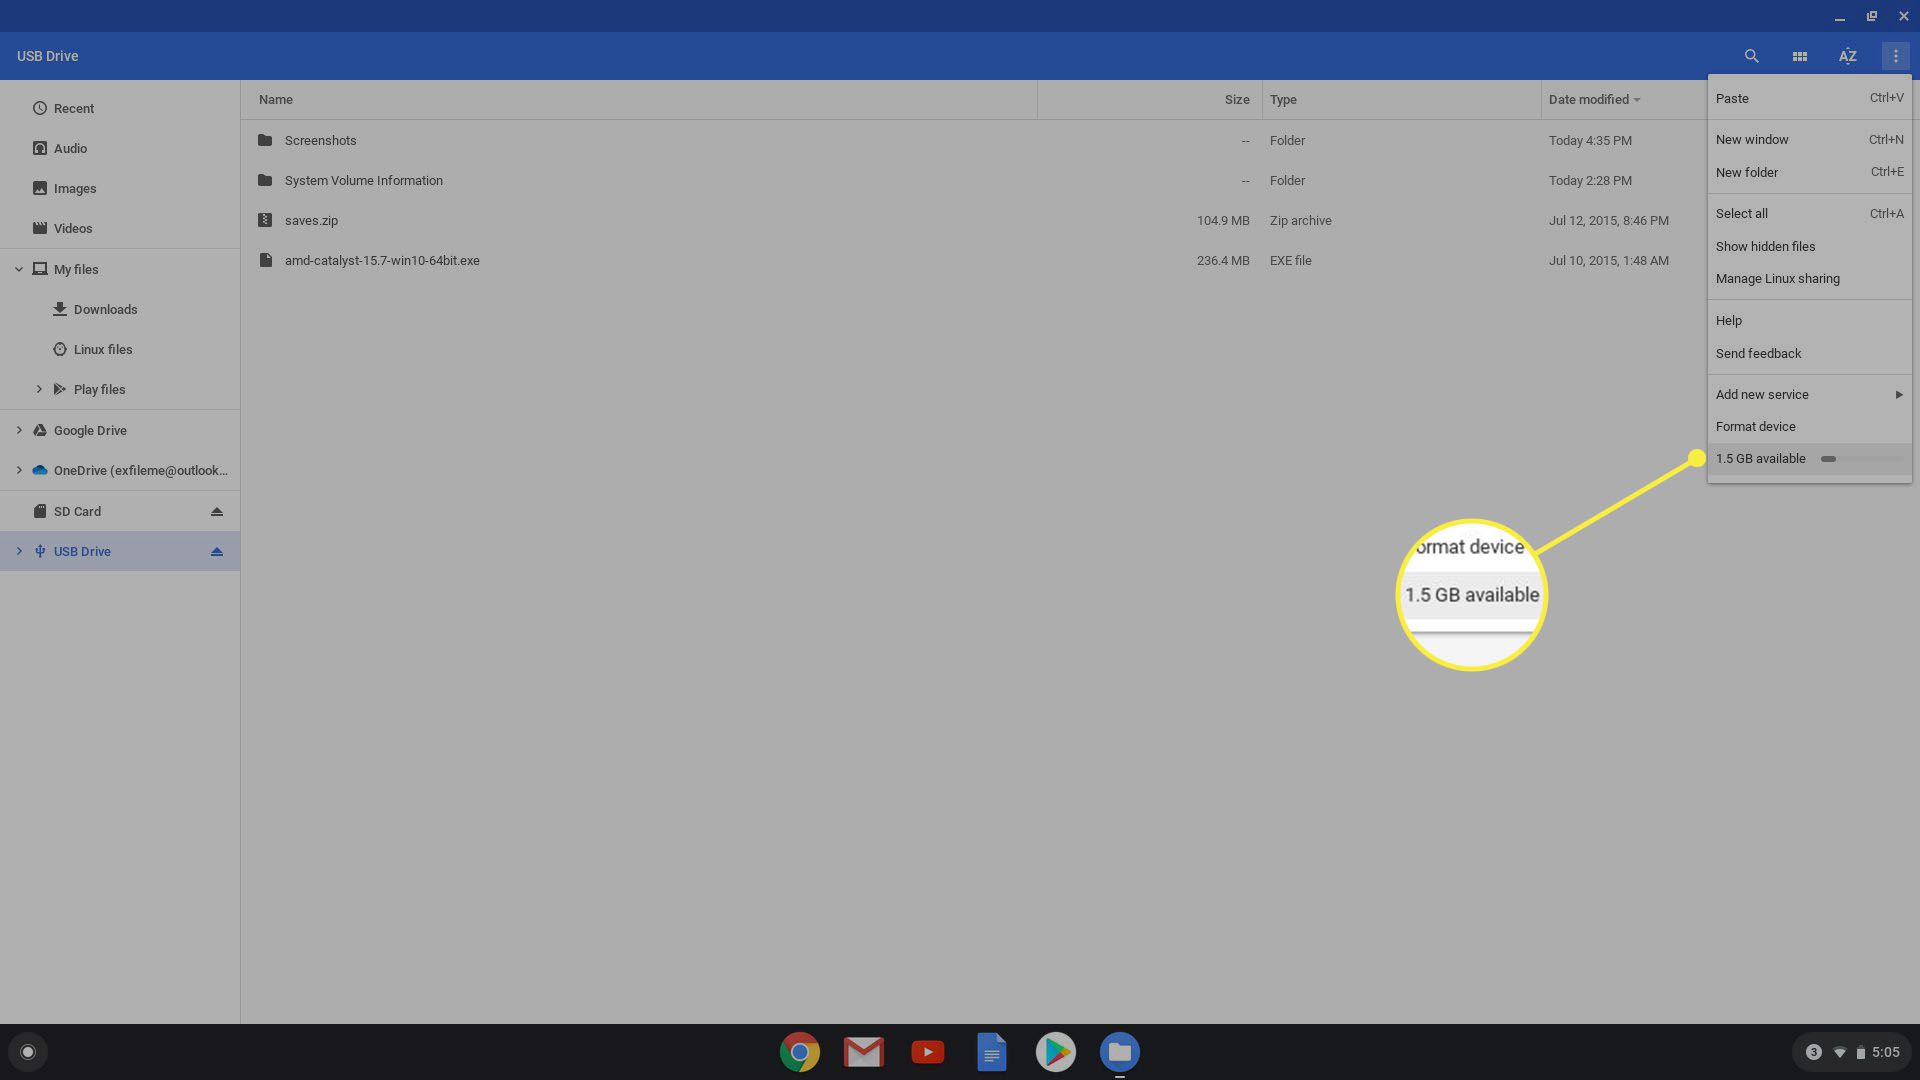 Chrome OS Hitta enhetskapacitet